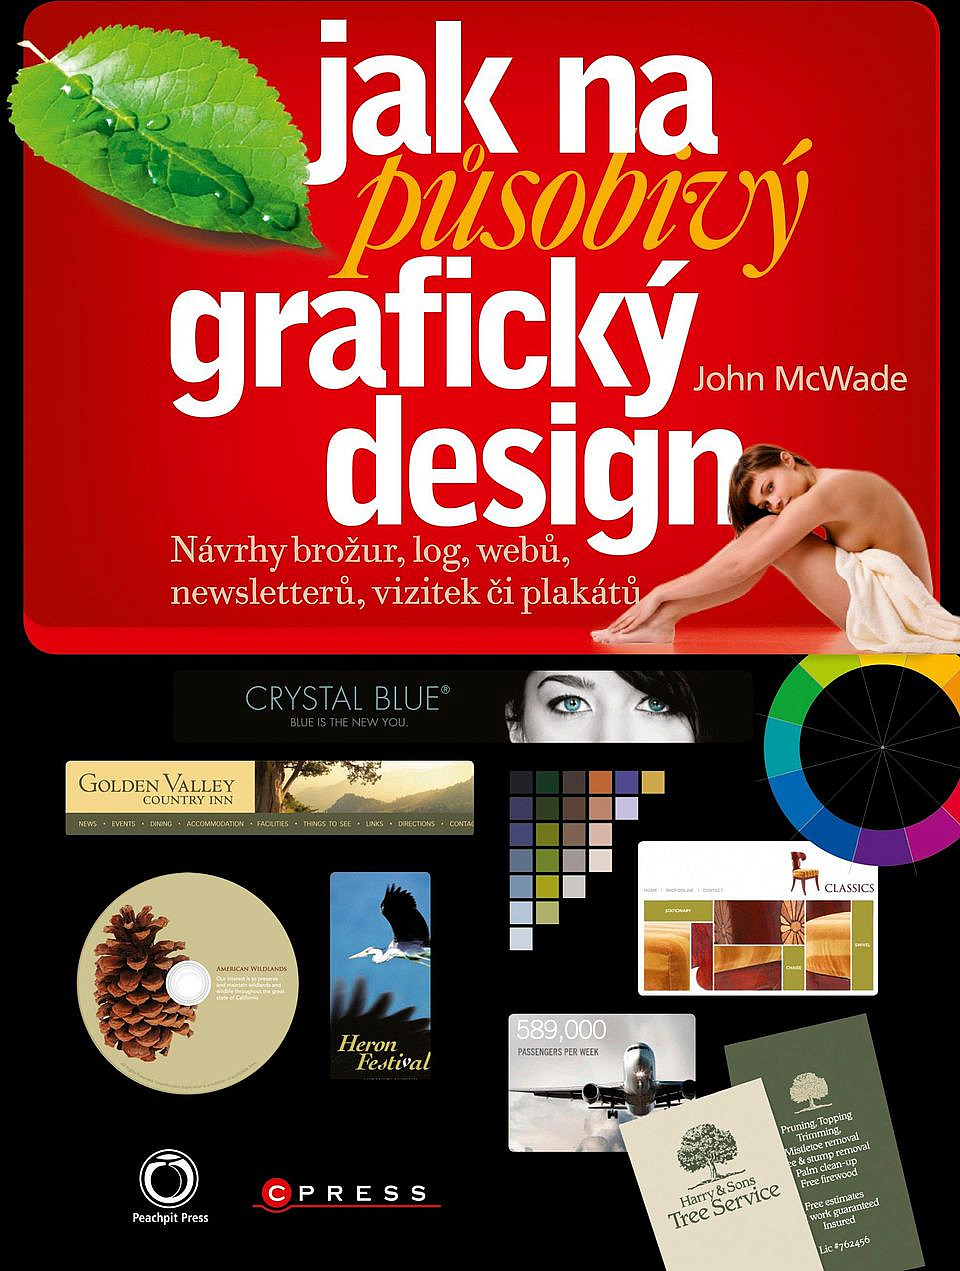 Jak na působivý grafický design: Návrhy brožur, log, webů, newsletterů, vizitek či plakátů